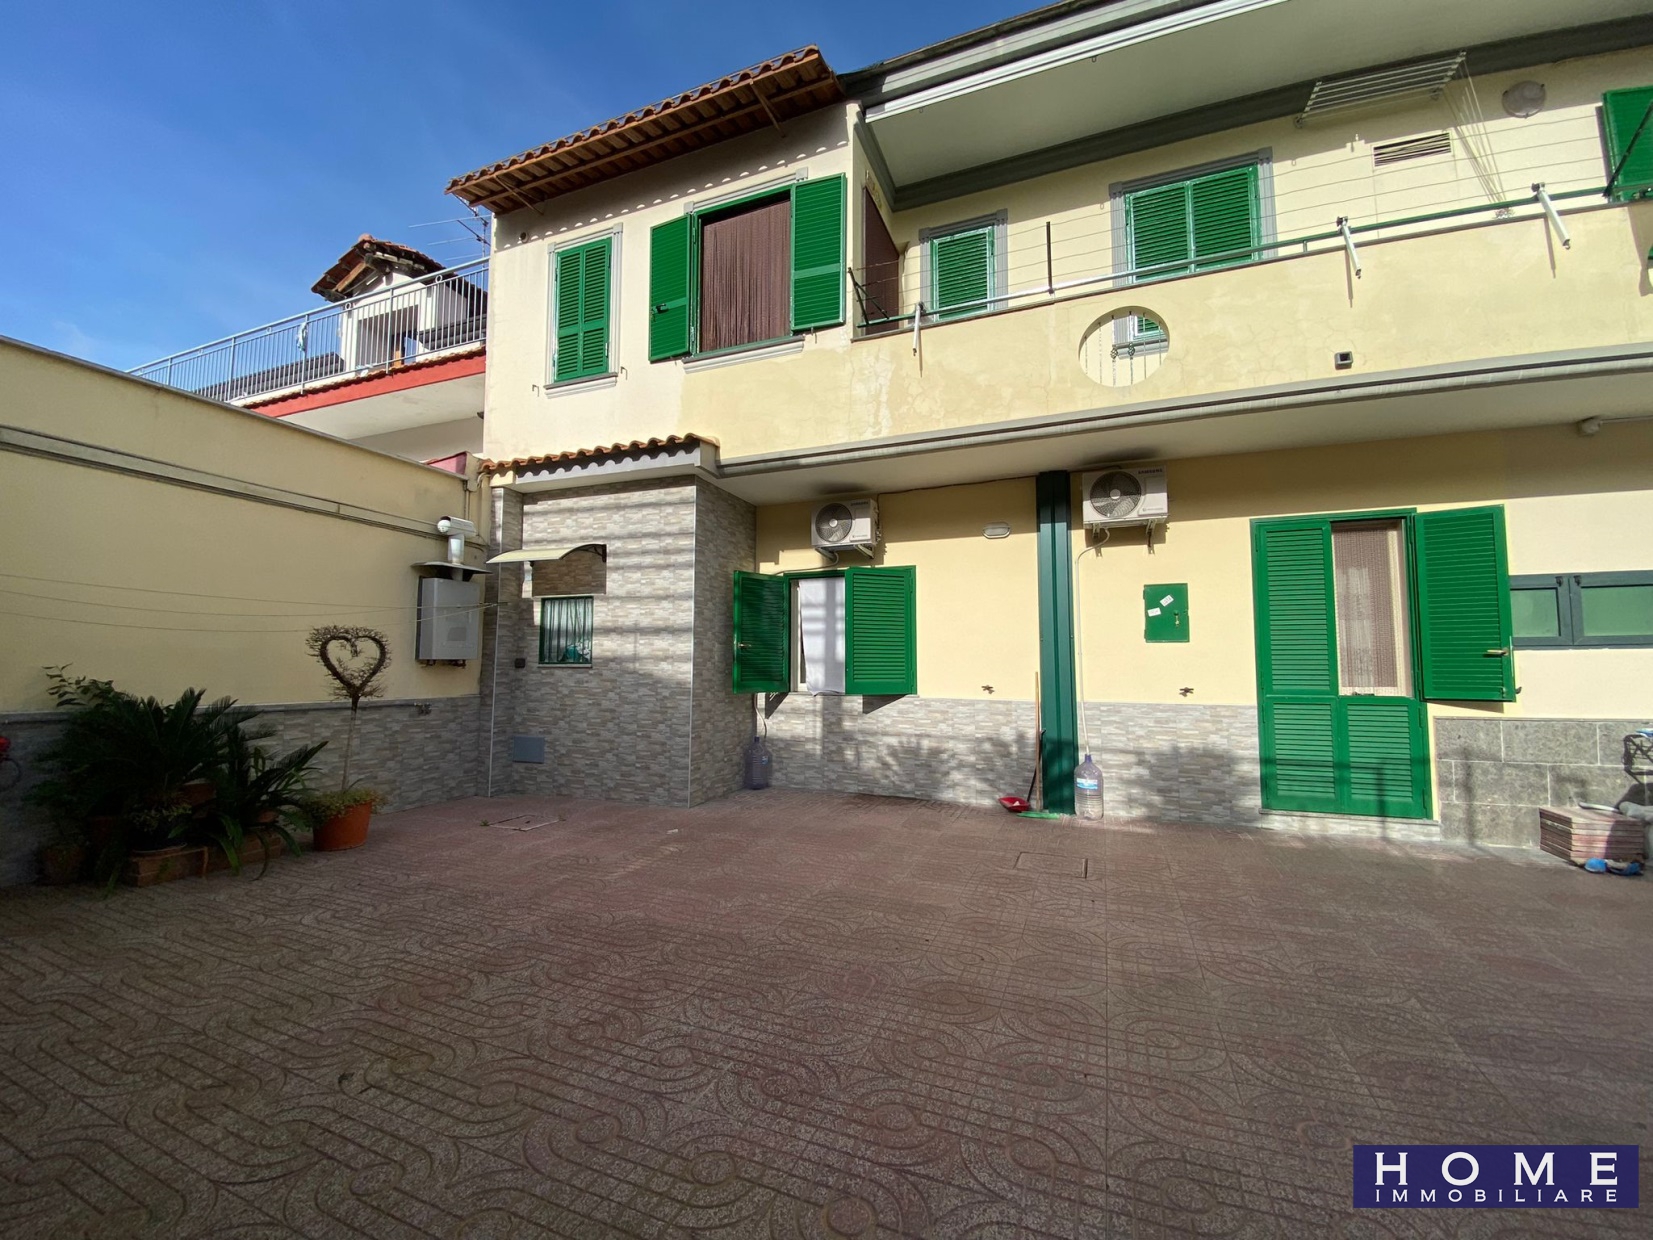 Appartamento in vendita a Frattaminore, 4 locali, prezzo € 129.900 | PortaleAgenzieImmobiliari.it